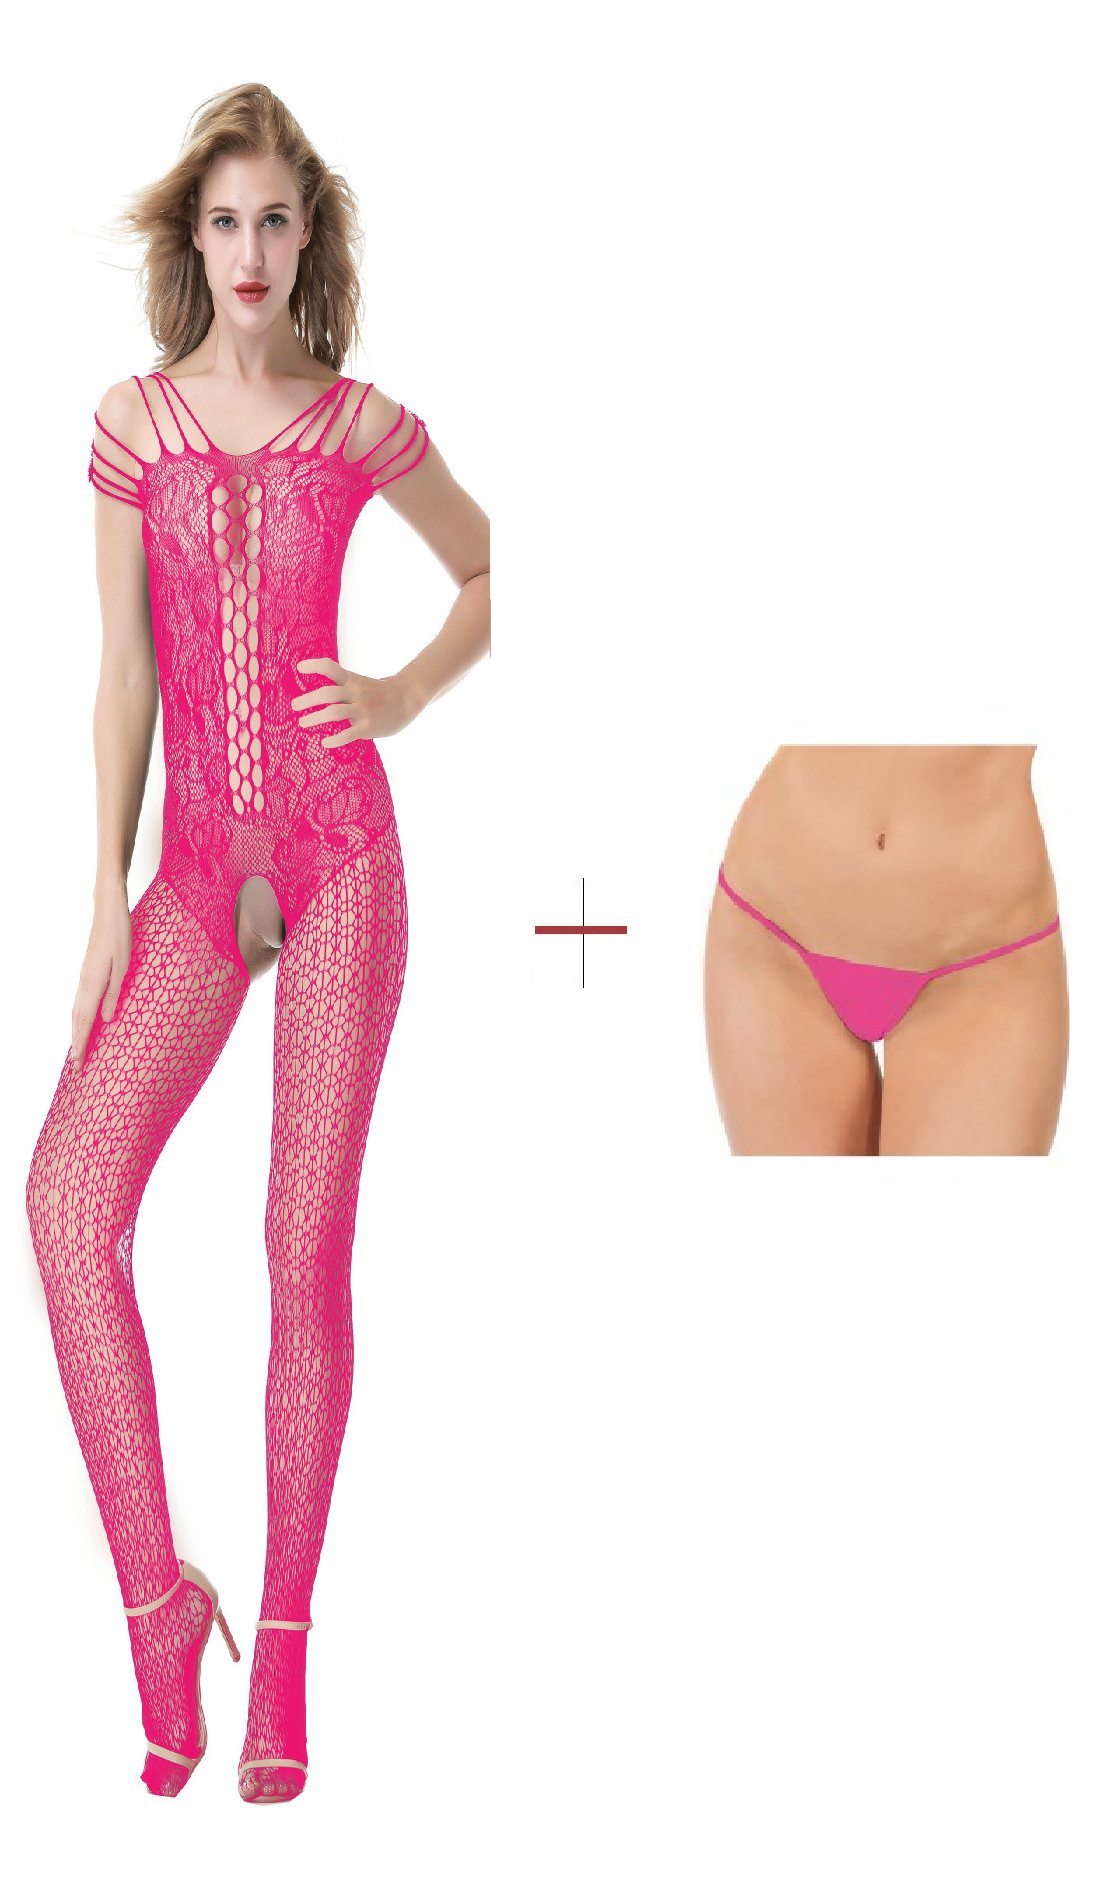 Kaamastra Dark Pink Fishnet Body Stockings & Free Thong